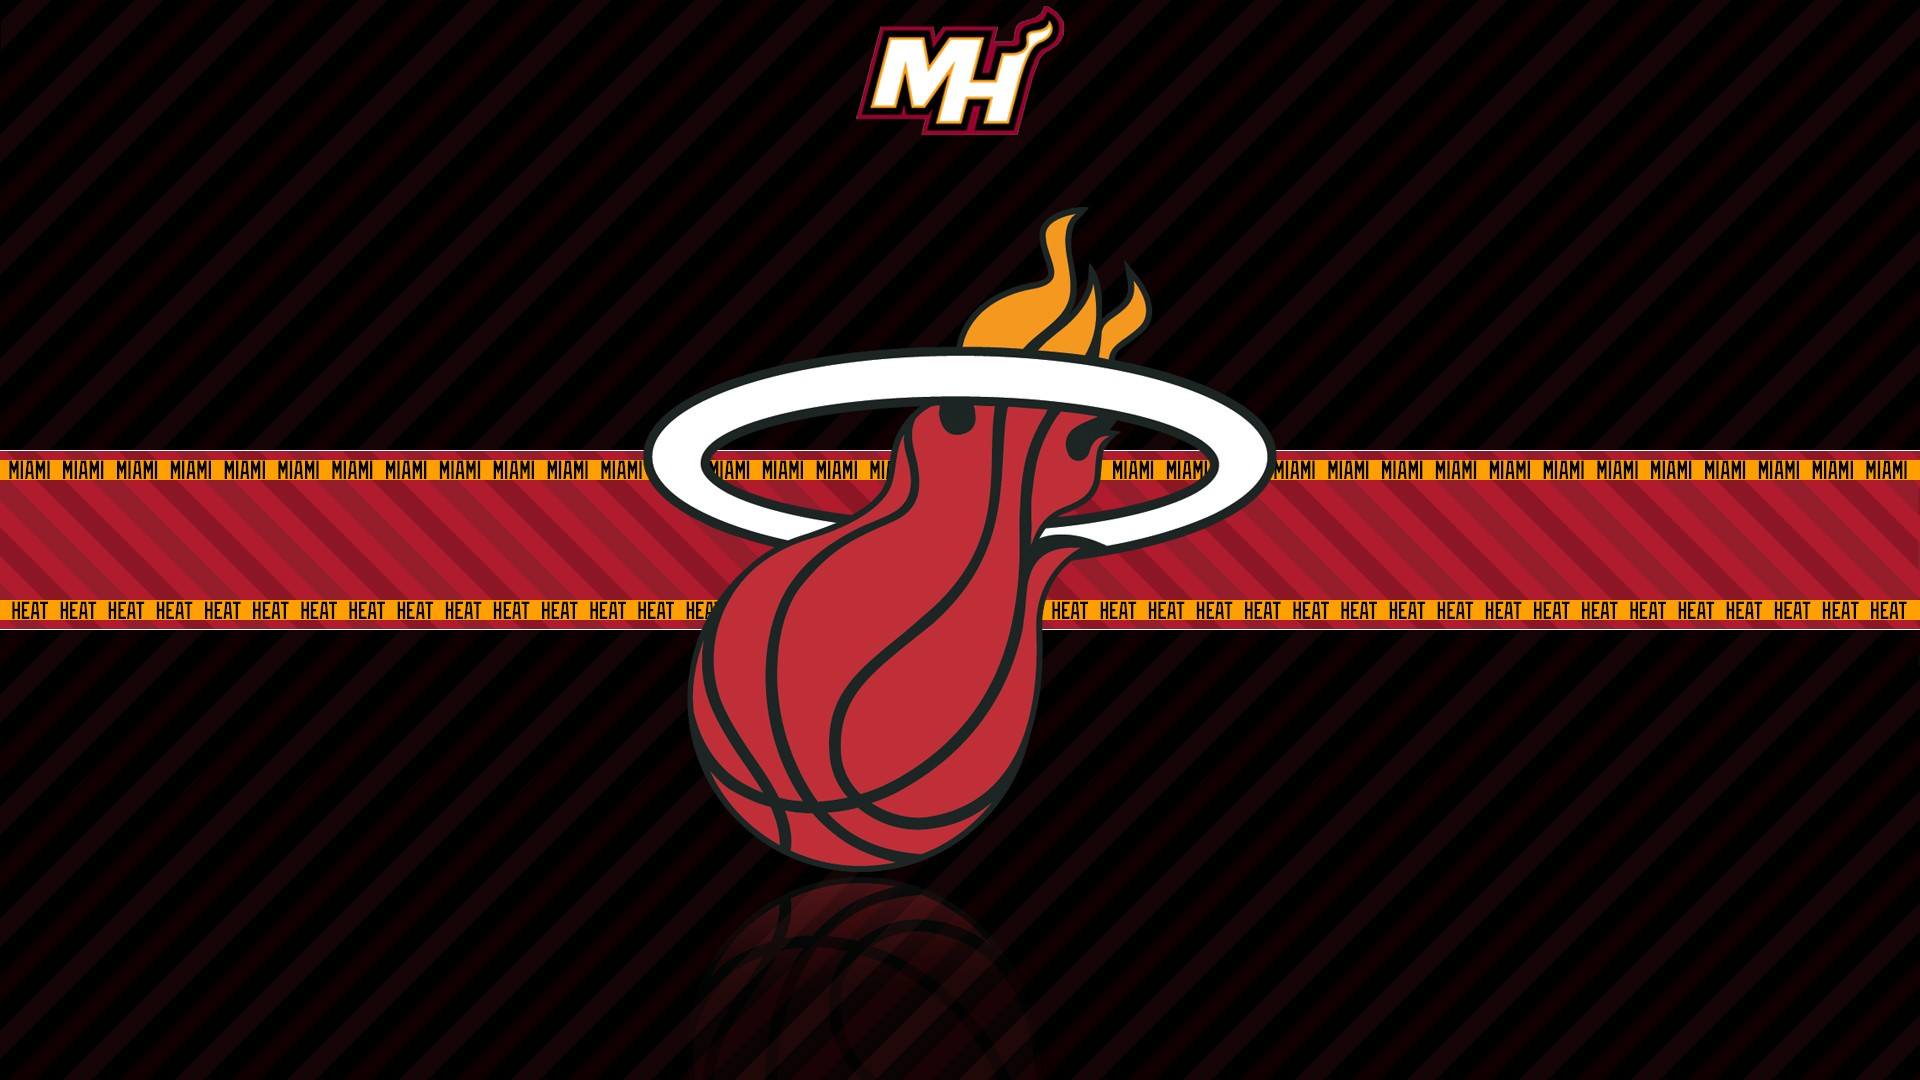 Miami Heat wallpaper hd free download